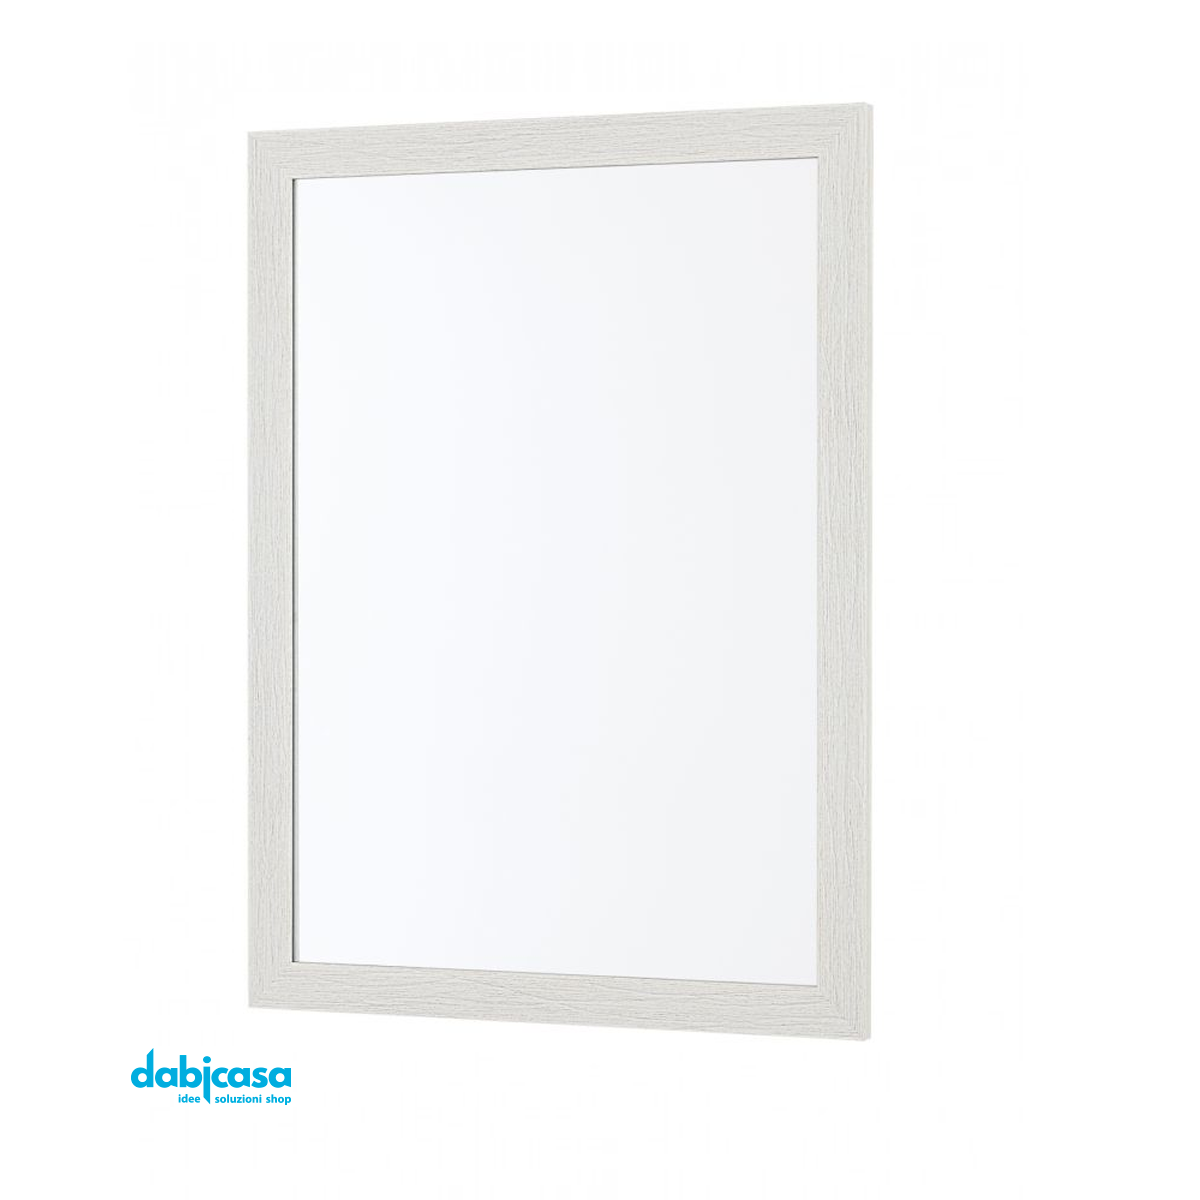 Specchio "Linea Wood" Con Cornice Colore Bianco Effetto Legno 50x60cm freeshipping - Dabicasa